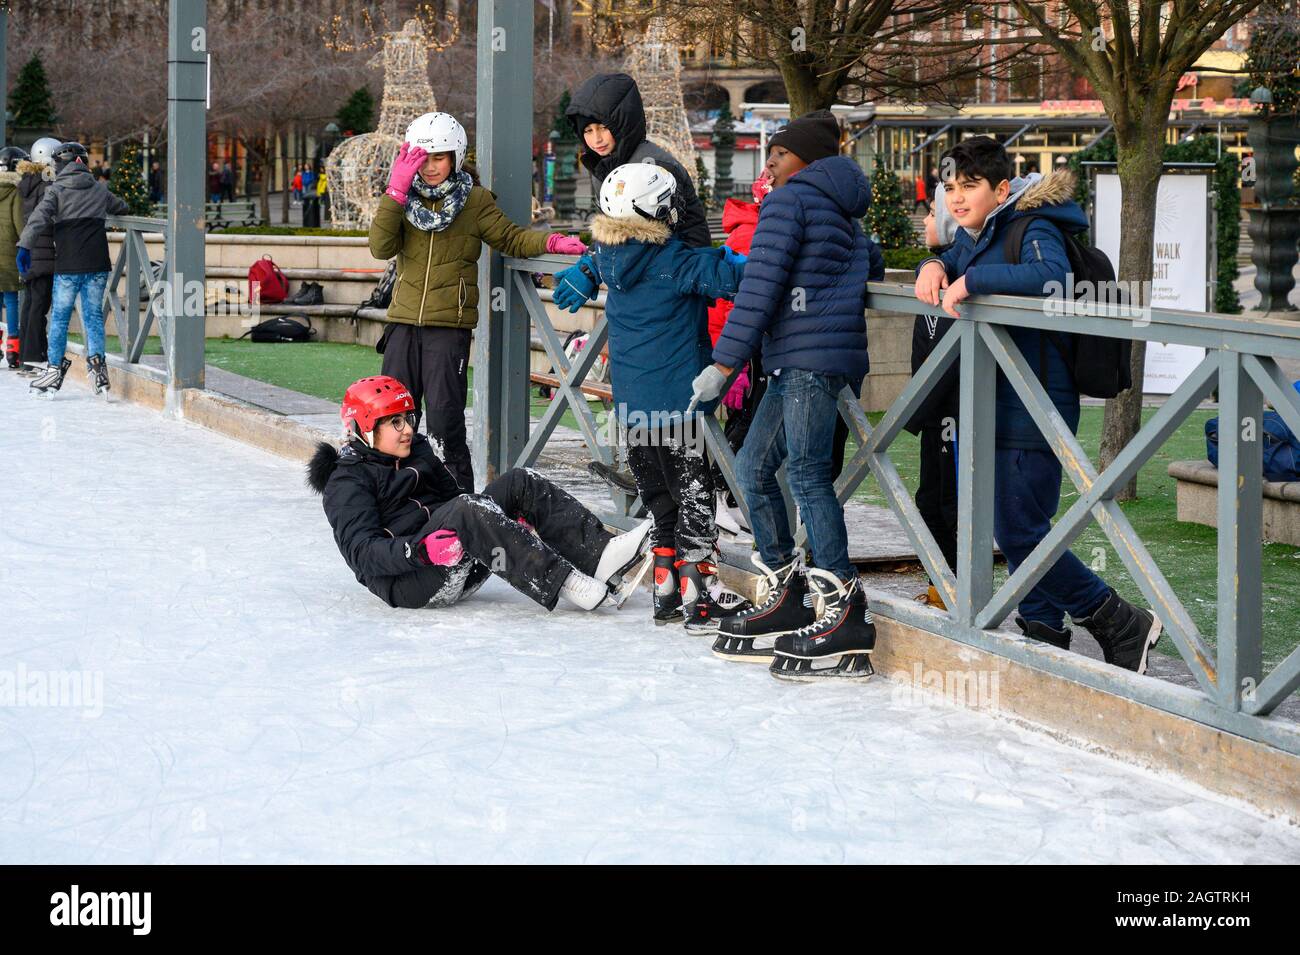 Stoccolma, Svezia, 18 Dicembre 2019: inverno atmosfera della città. La scuola dei bambini nella pista di pattinaggio sul ghiaccio in città. Tradizionale pista di pattinaggio sul ghiaccio nel parco Kun Foto Stock